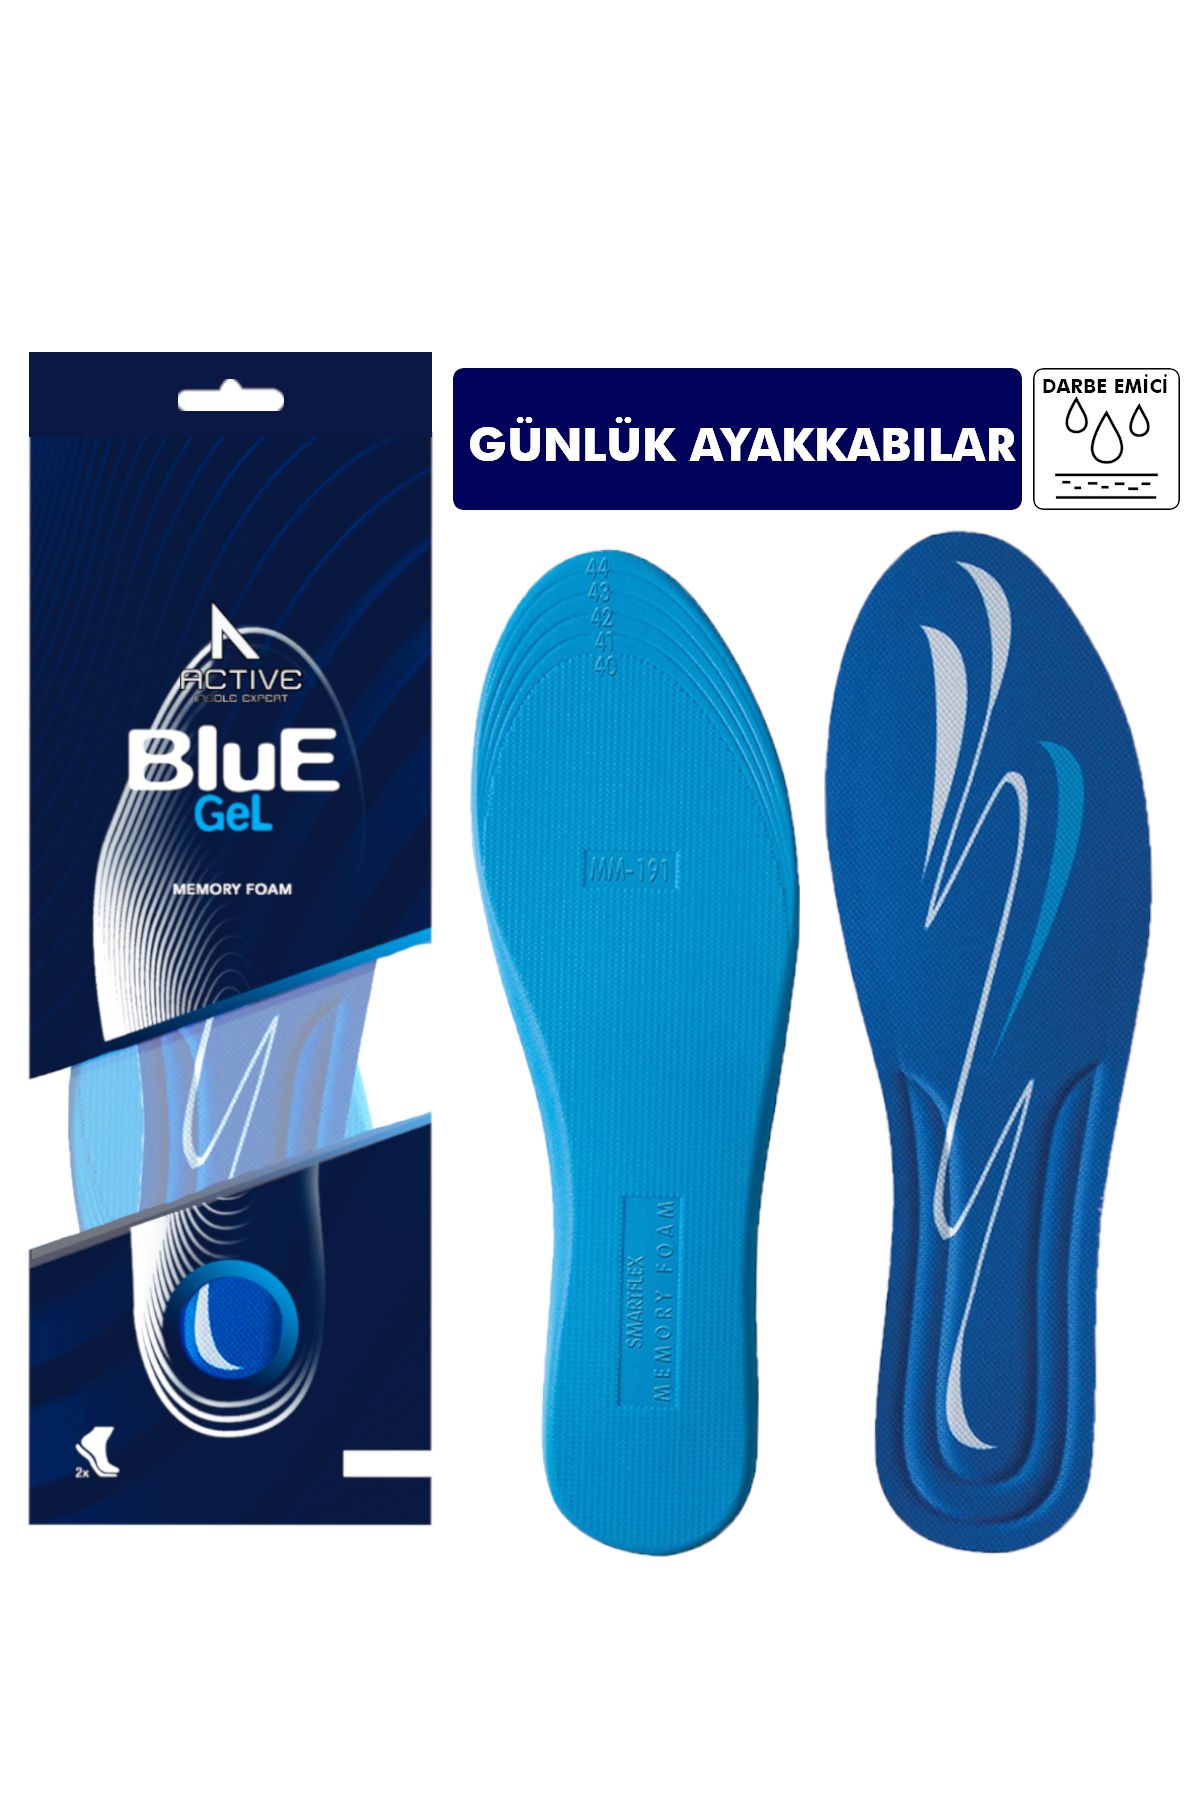 Blue Gel Memory Foam, Günlük Ayakkabılar Için Darbe Emici Yumuşak Ayakkabı Iç Tabanı